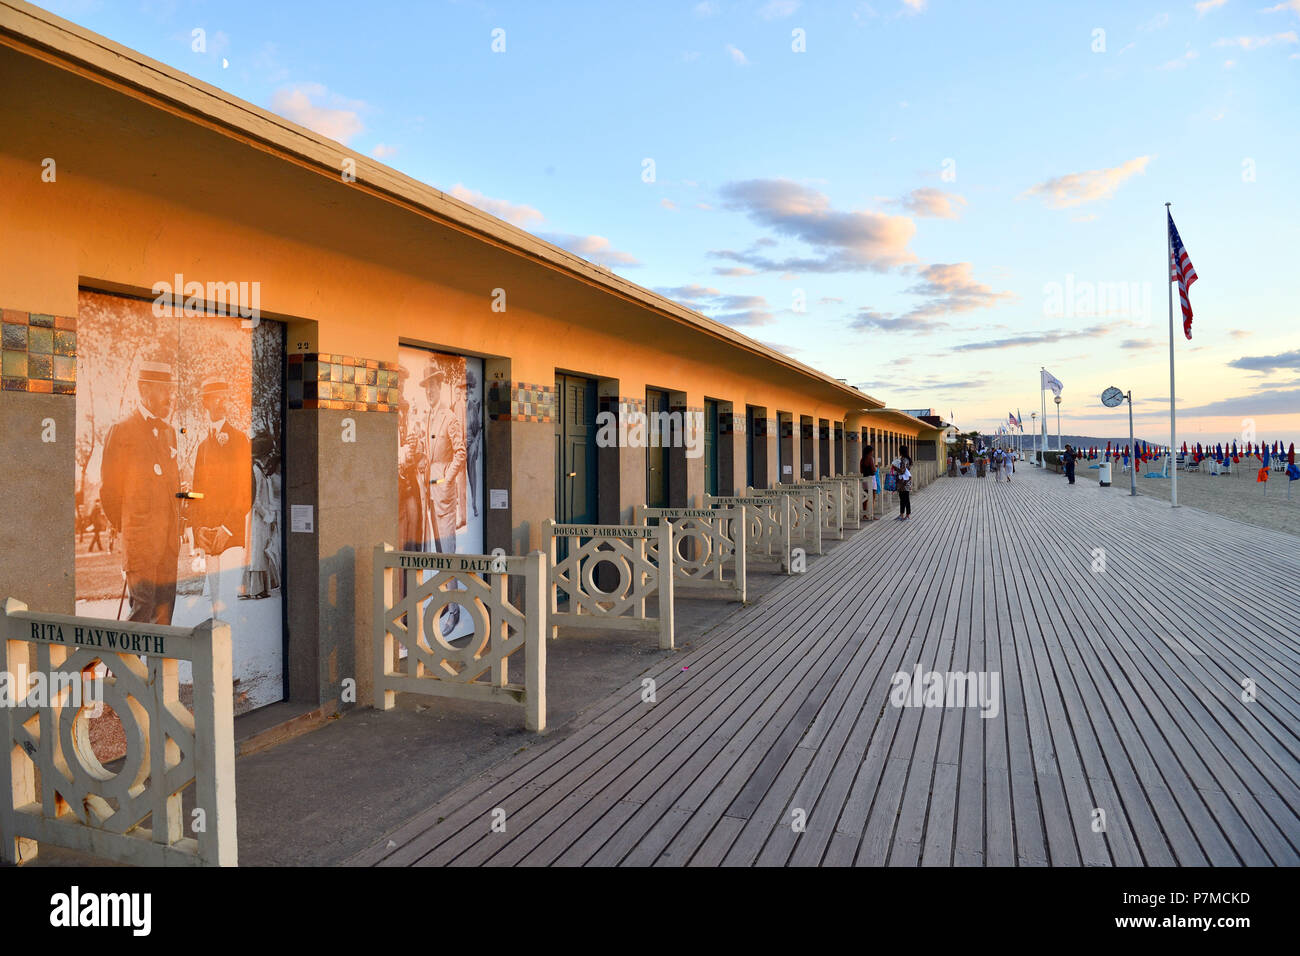 Francia, Calvados, Pays d'Auge, Deauville, spiaggia, Promenade des Planches (stadio a piedi), rivestita con cabine da spiaggia con il nome di una celebrità che hanno partecipato al Festival di Deauville del cinema americano Foto Stock